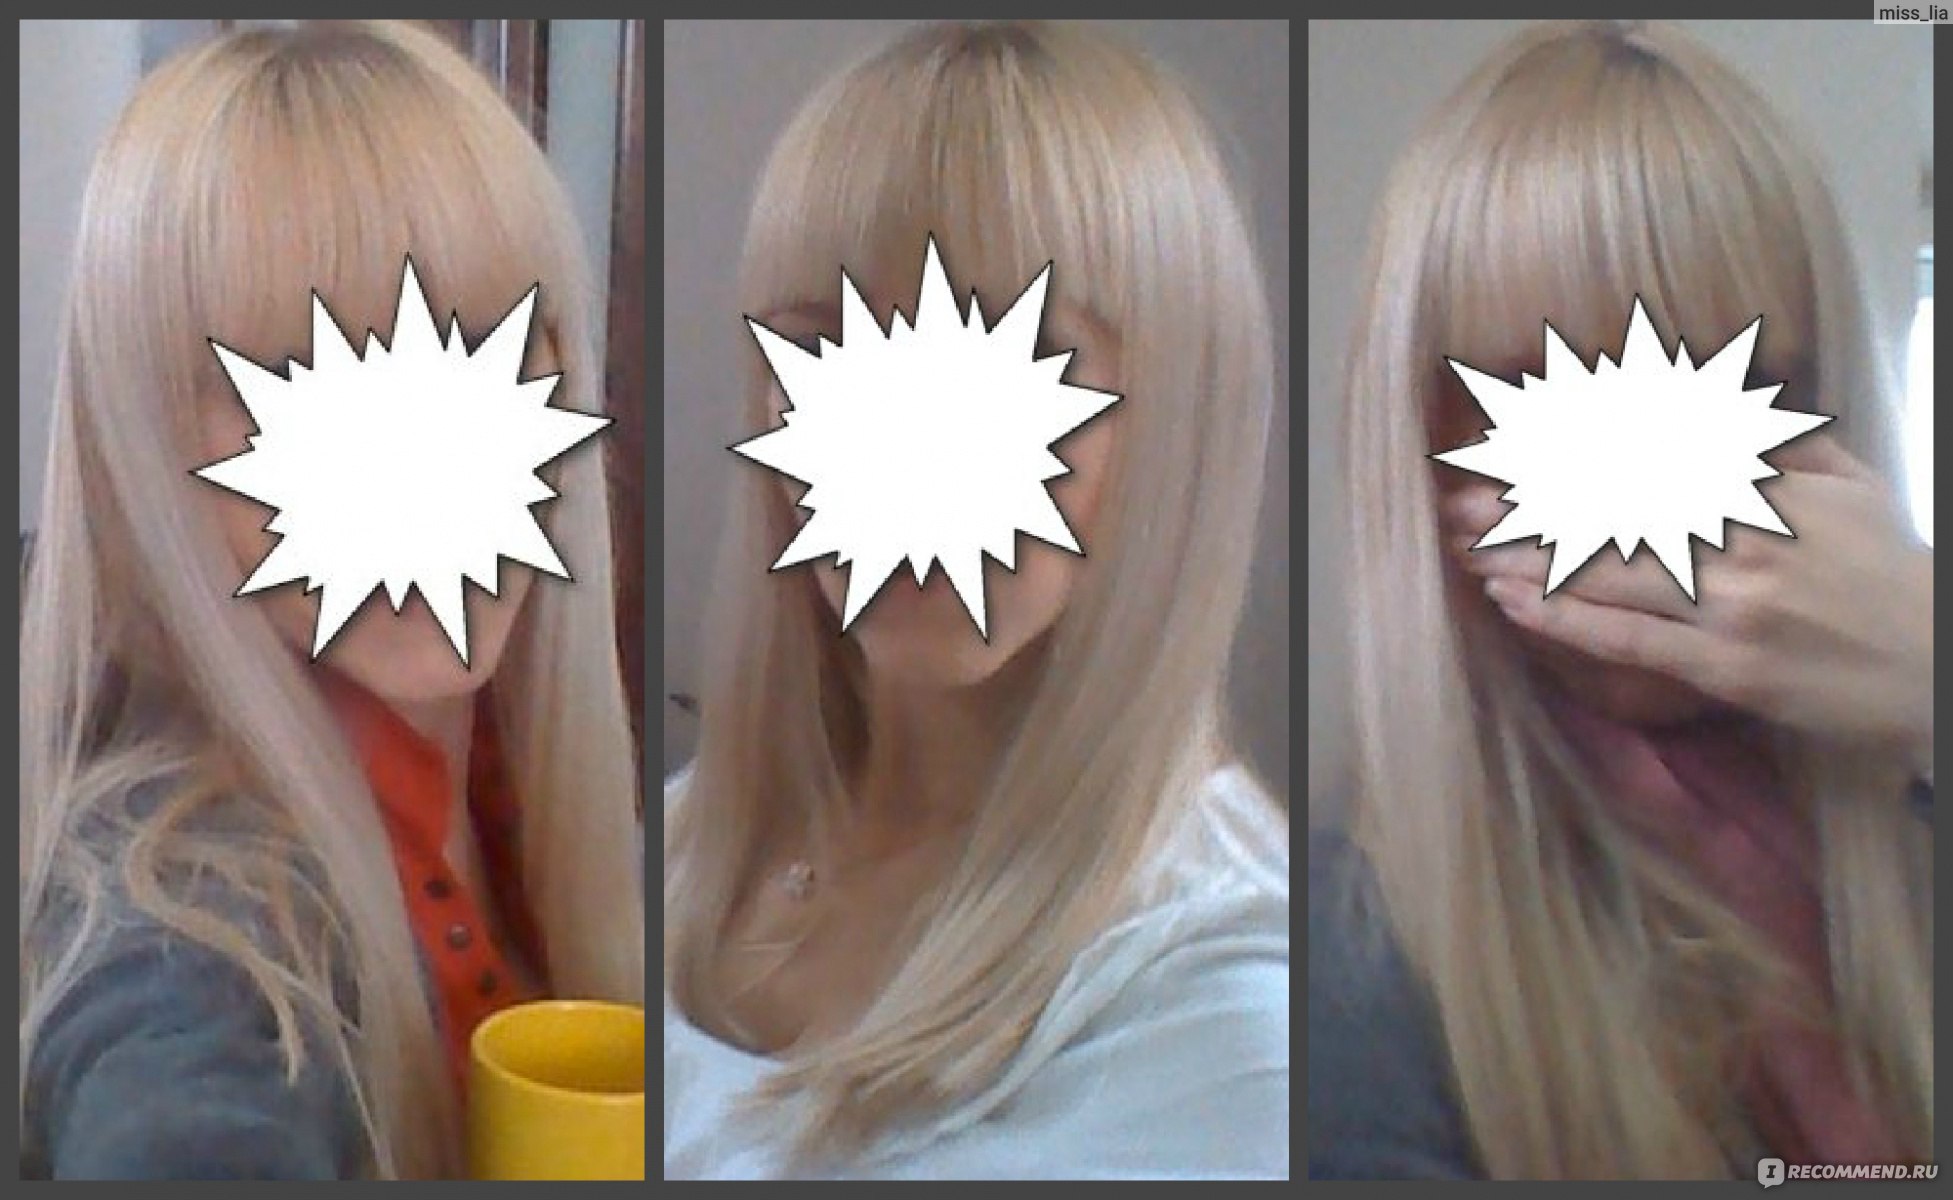 Оттеночный бальзам пепельный блонд concept фото до и после